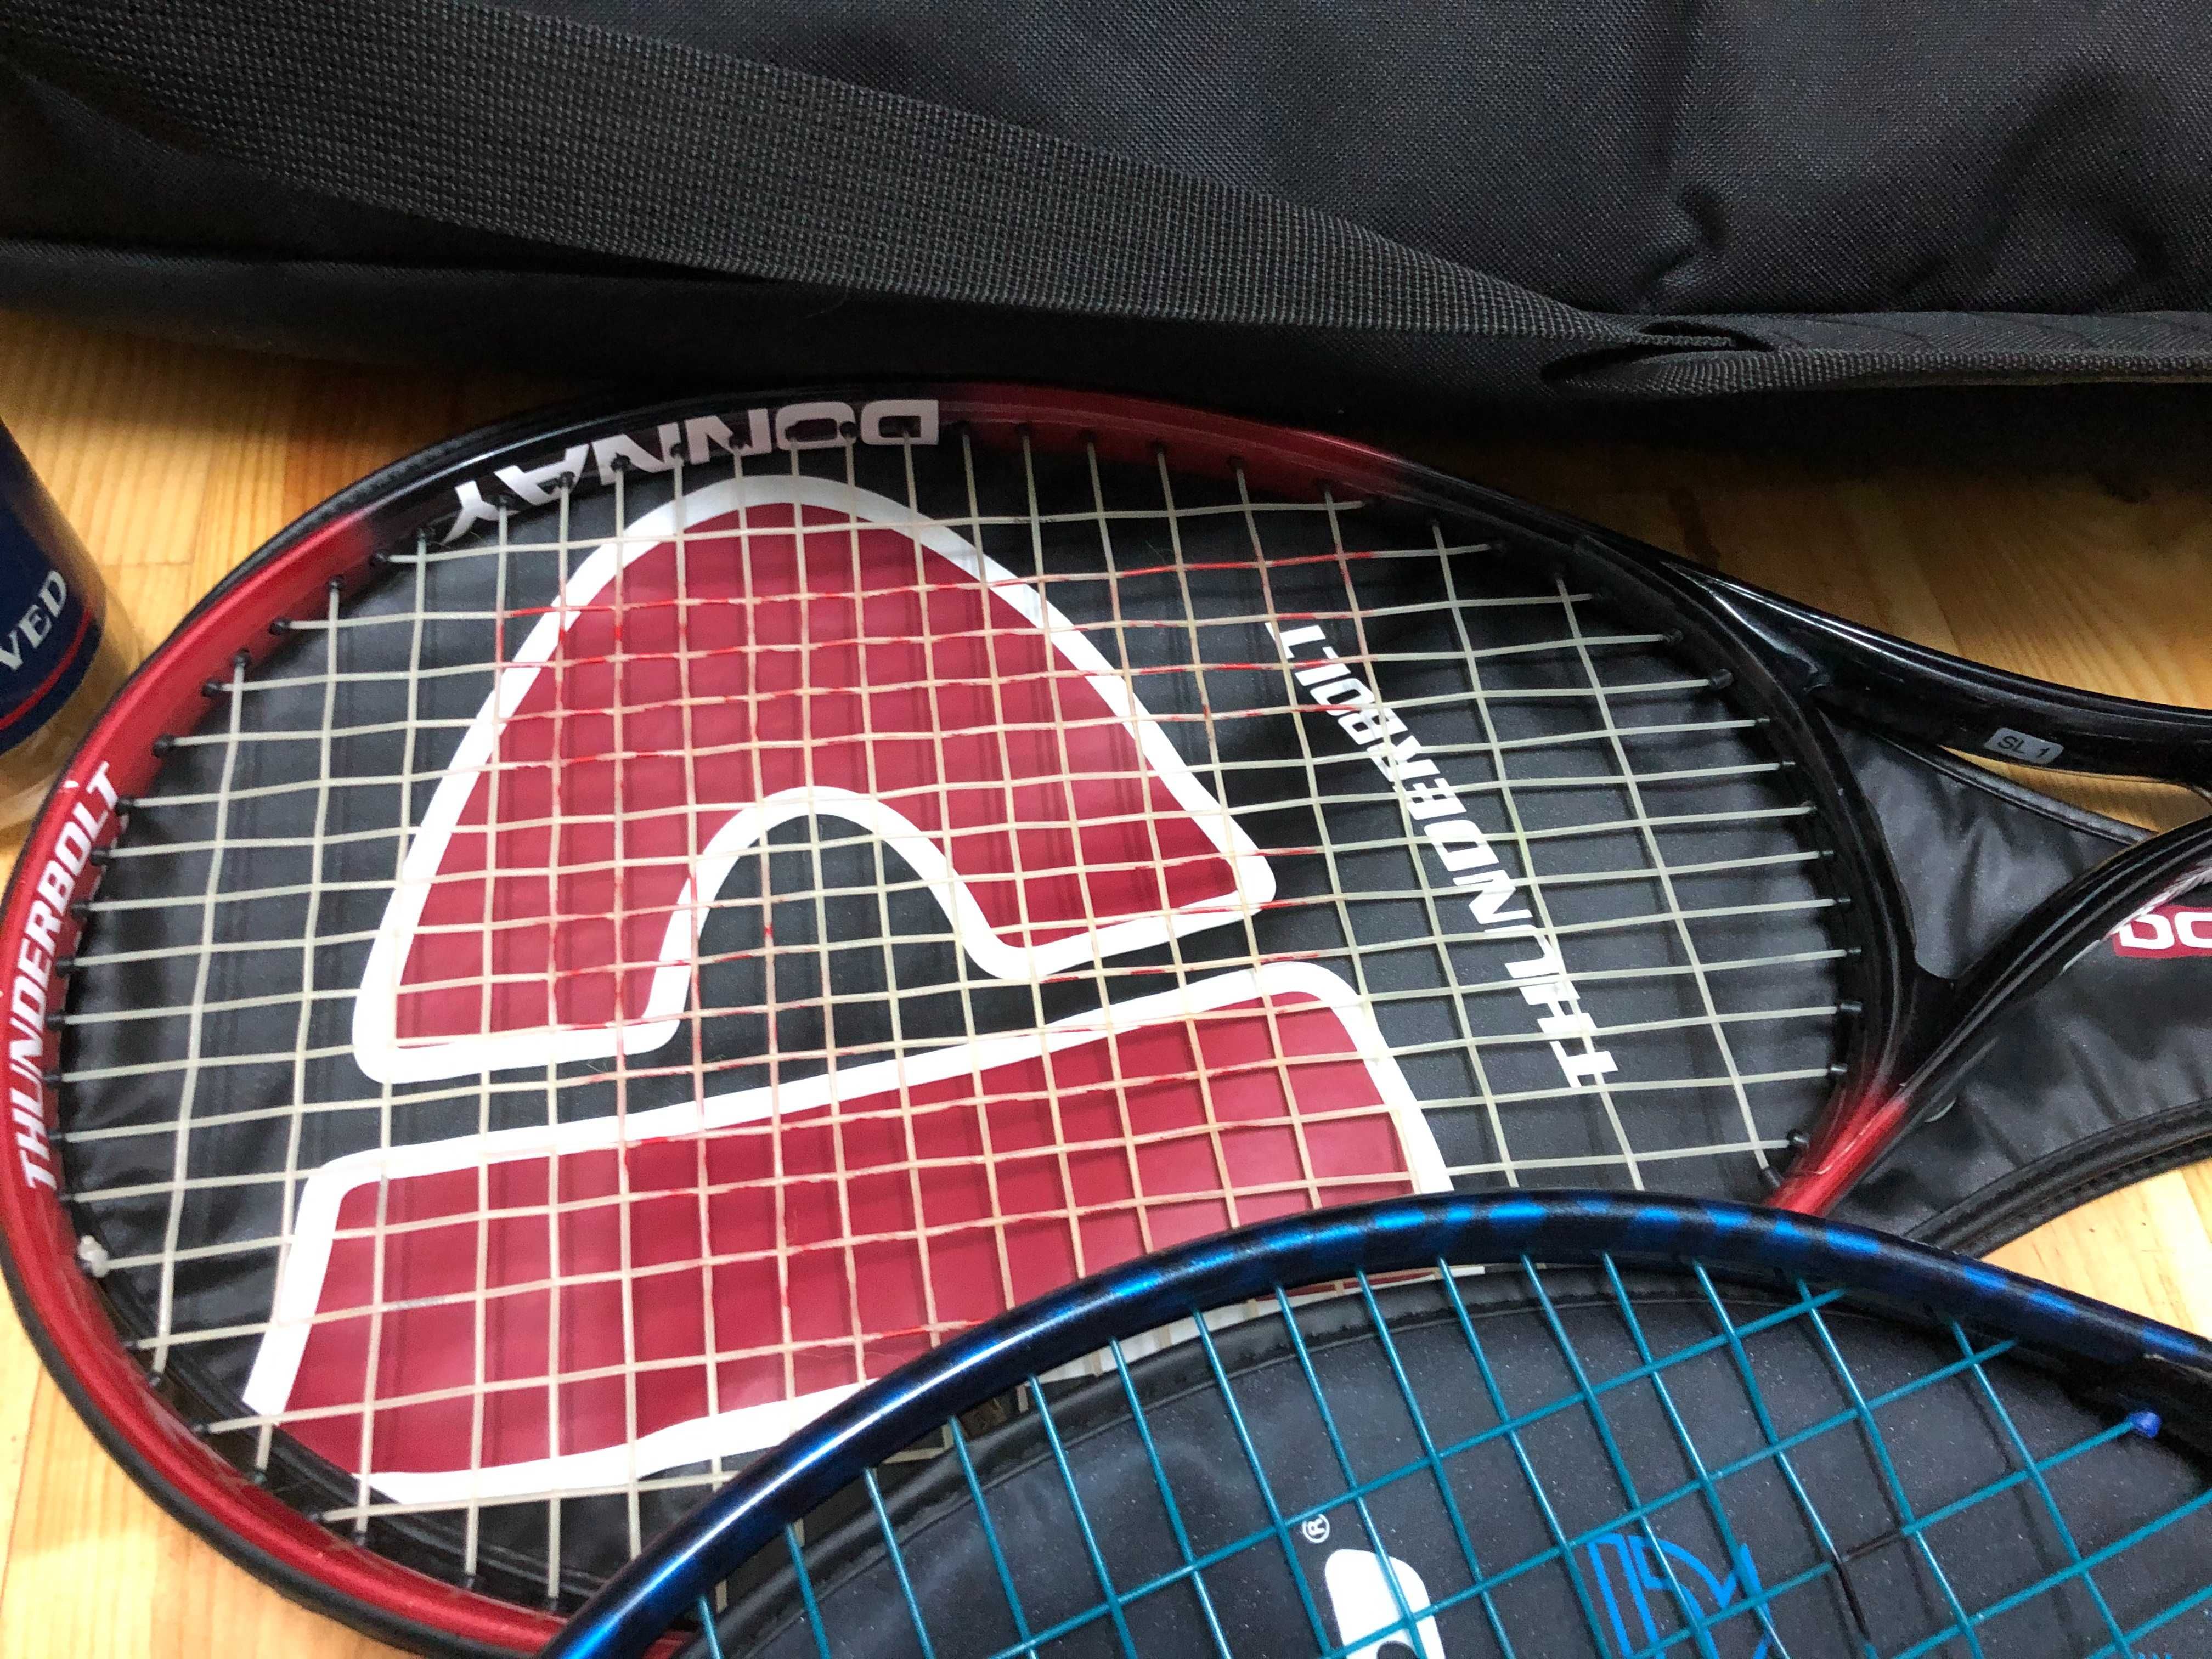 Saco de ténis Nike + duas raquetes e bolas